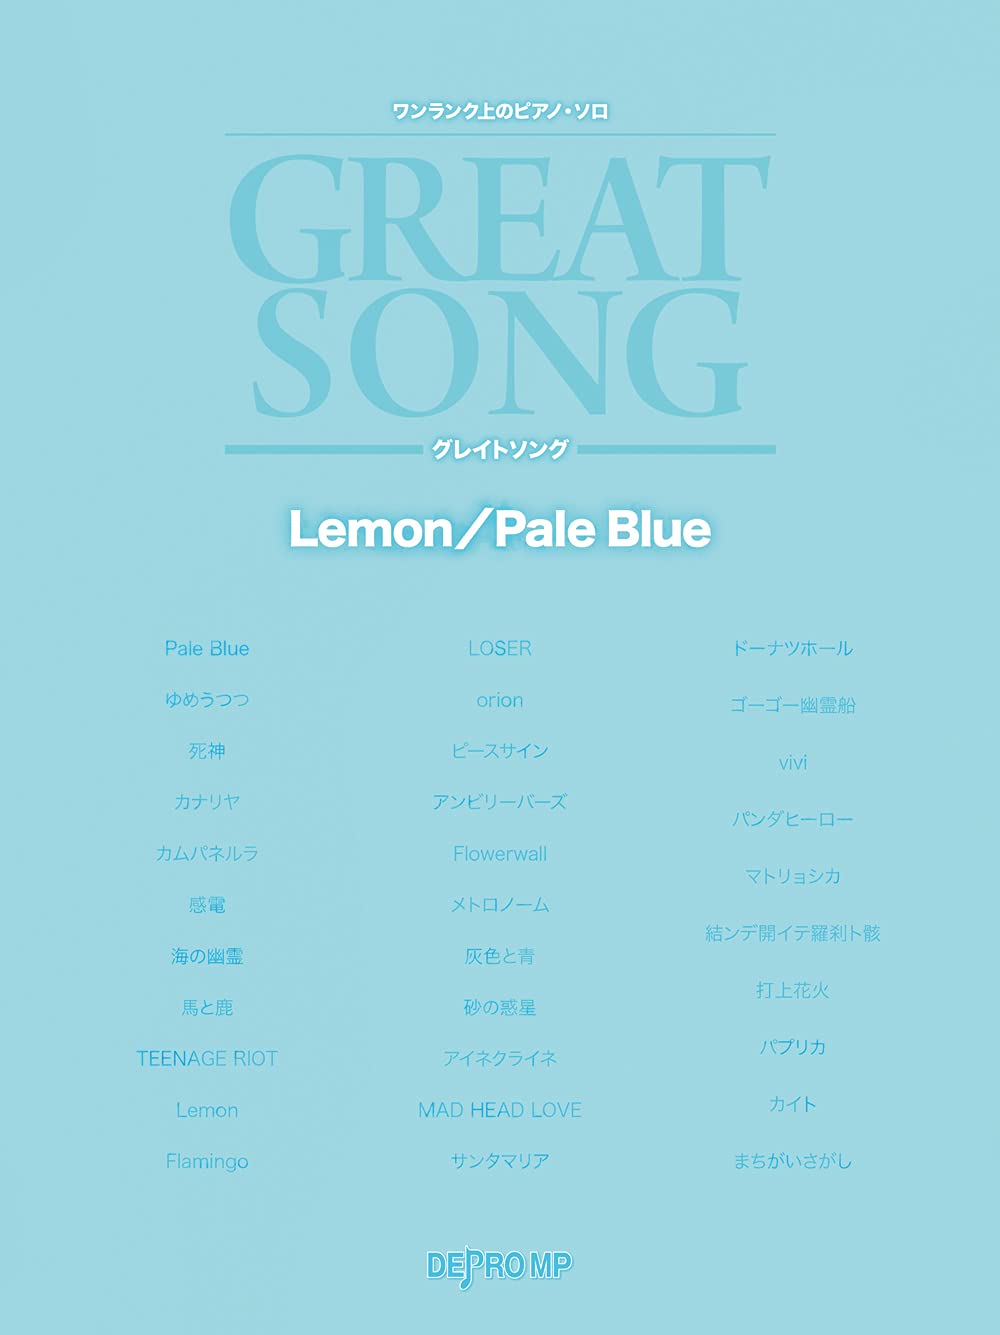 GREAT SONG Kenshi Yonezu/HACHI Easy to Intermediate Piano Solo Lemon/Pale Blue